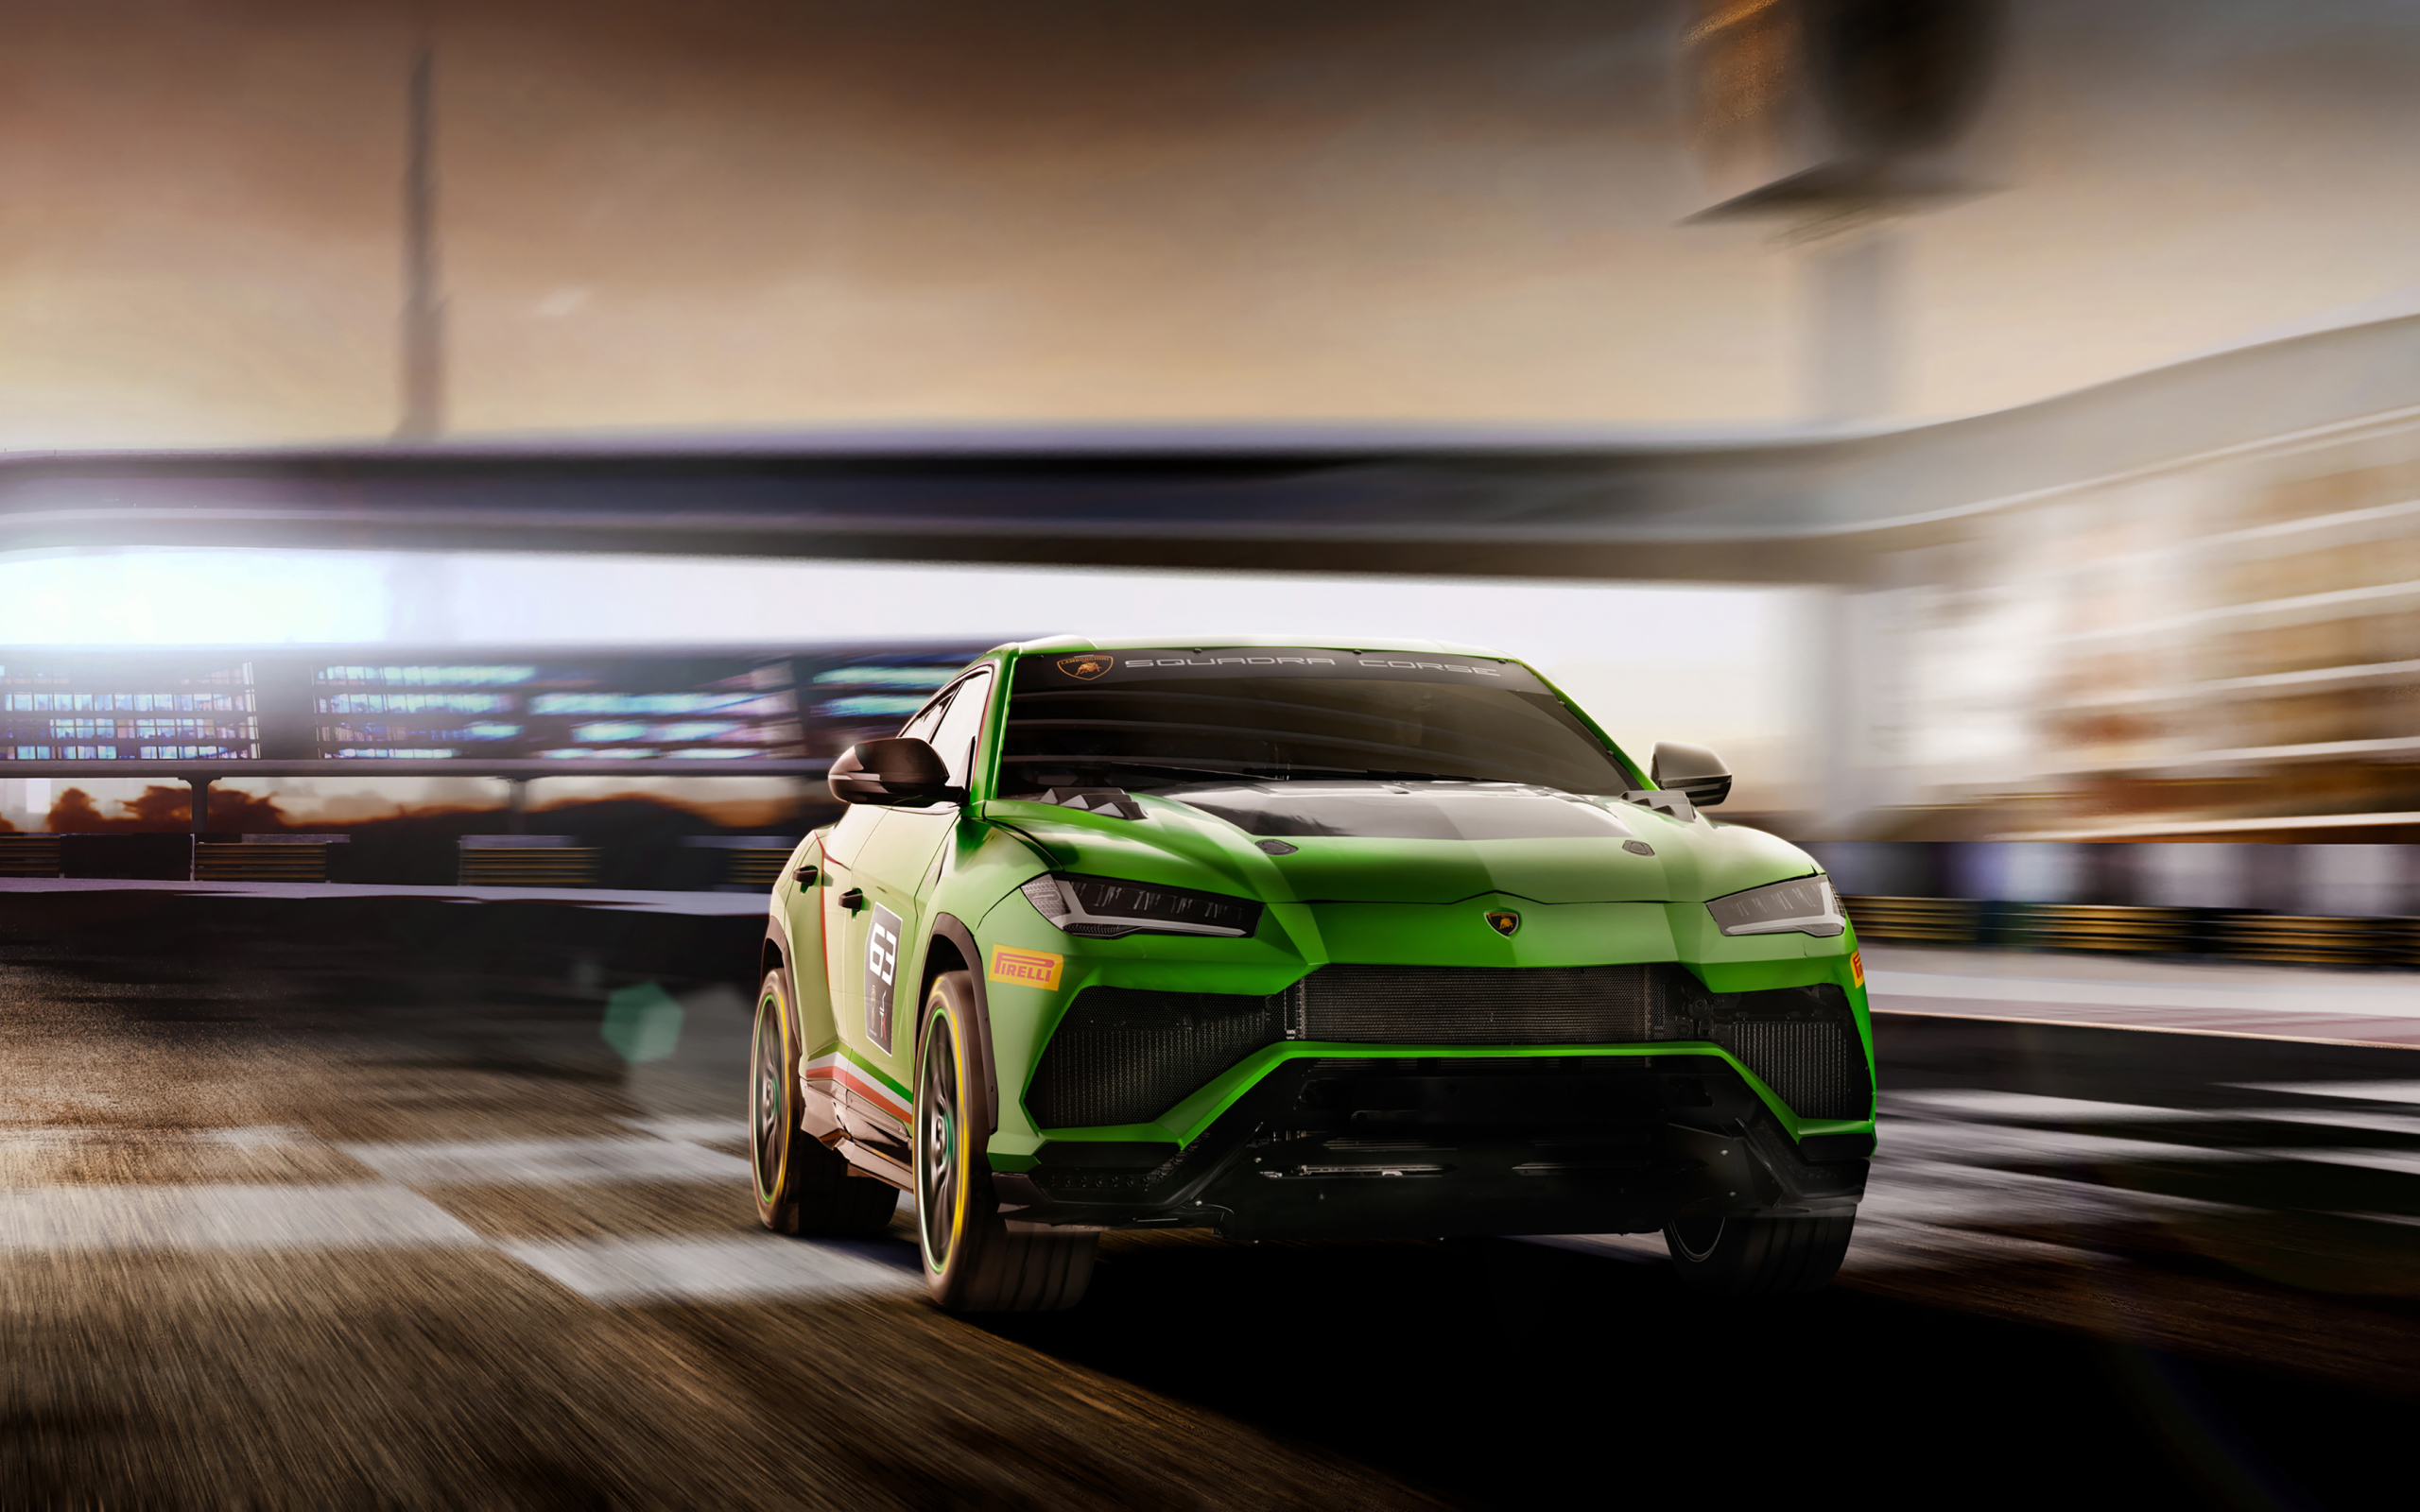 Green SUV Lamborghini Urus ST-X Concept 2019 on the road